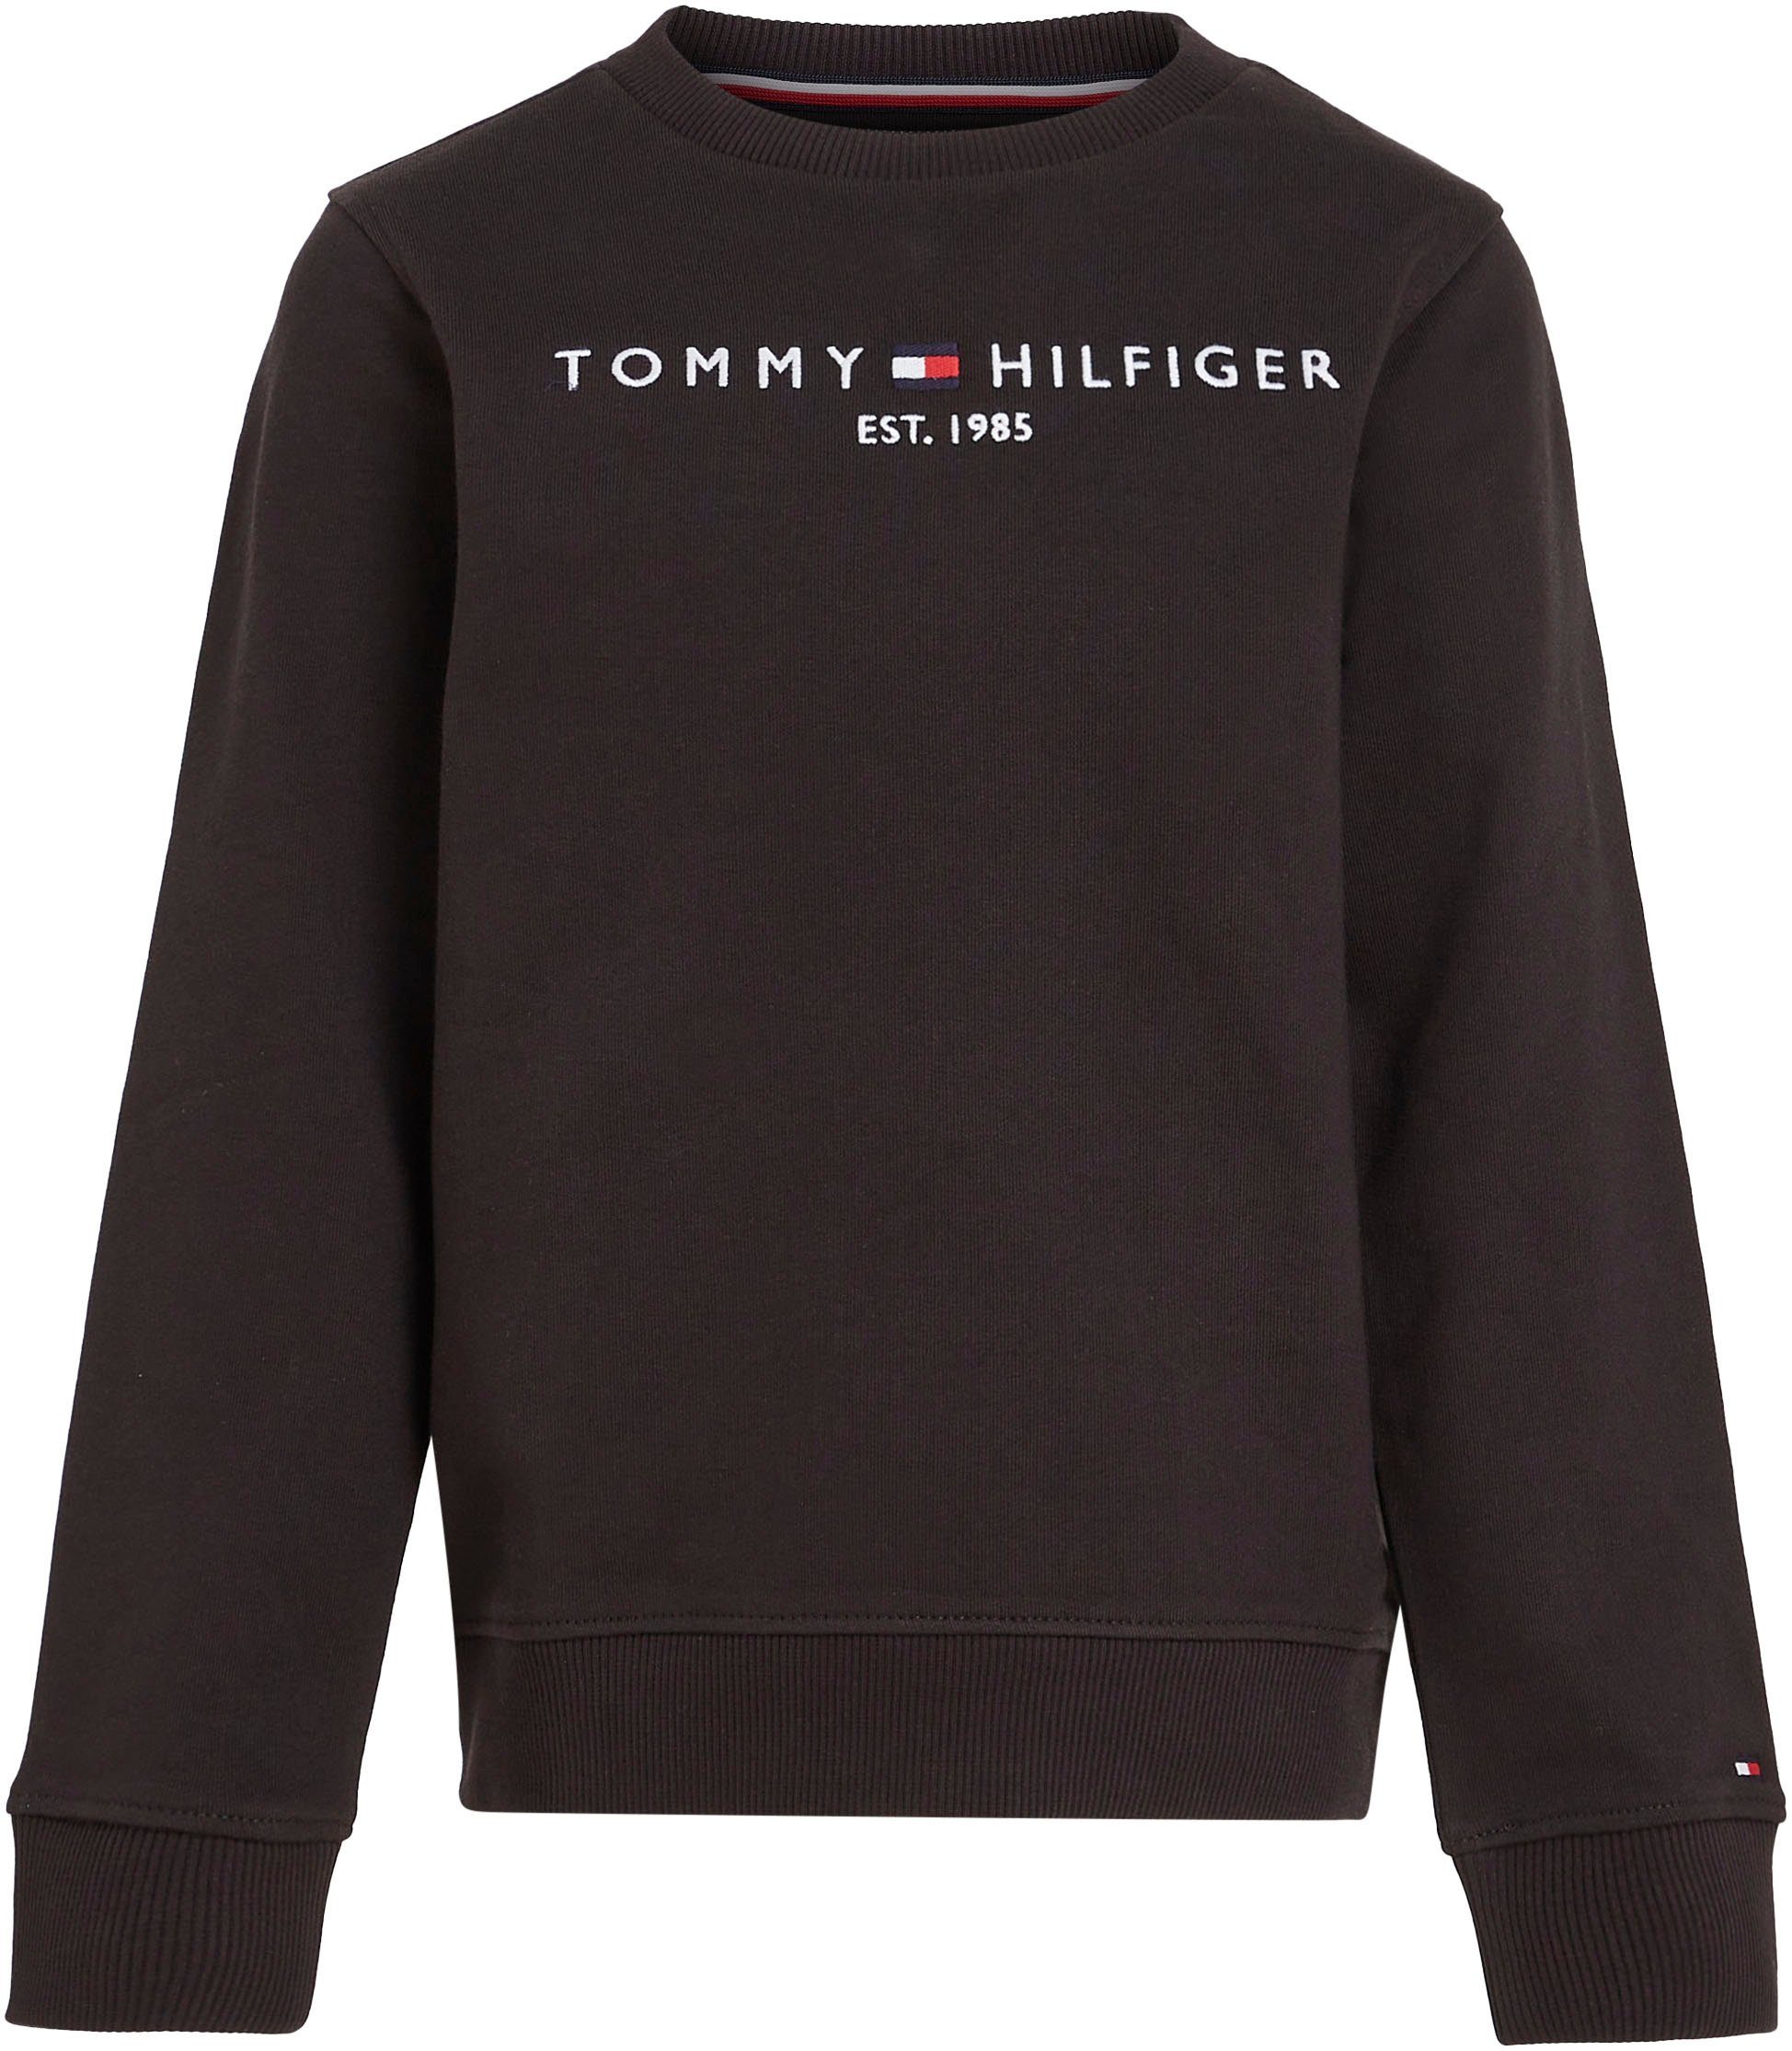 Tommy Hilfiger Sweatshirt ESSENTIAL für und Jungen Mädchen SWEATSHIRT